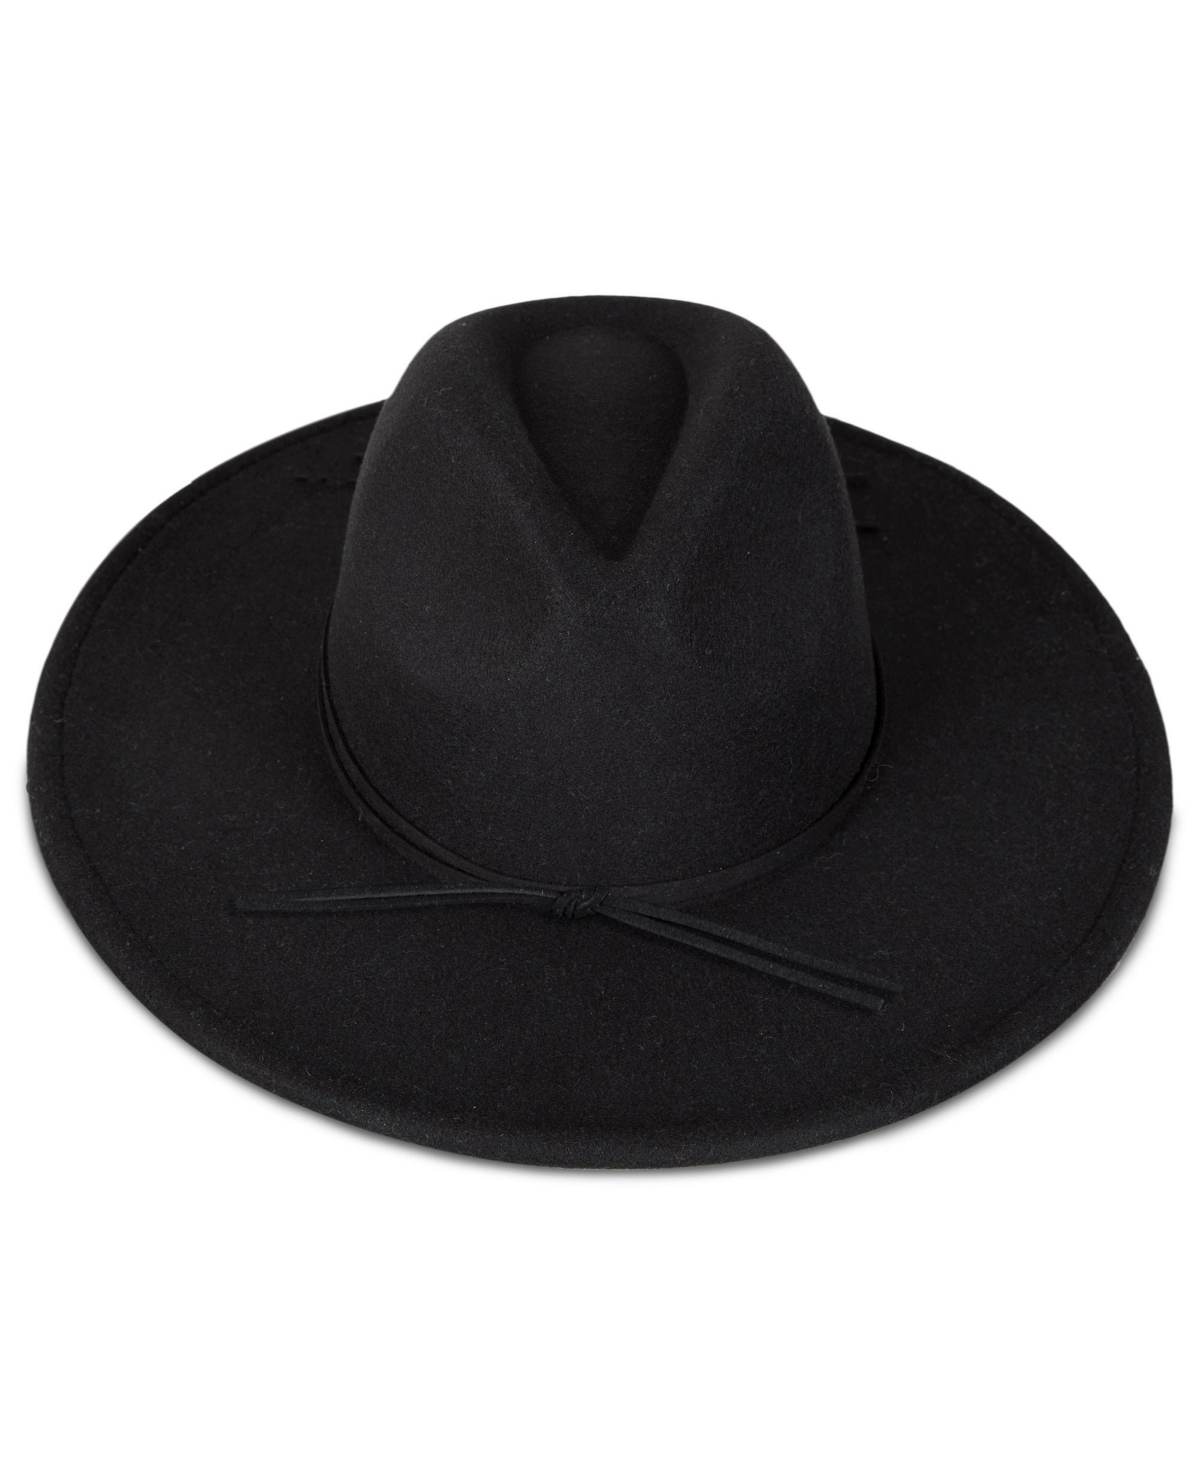 Women's Wide Brim Ranger Hat - Black